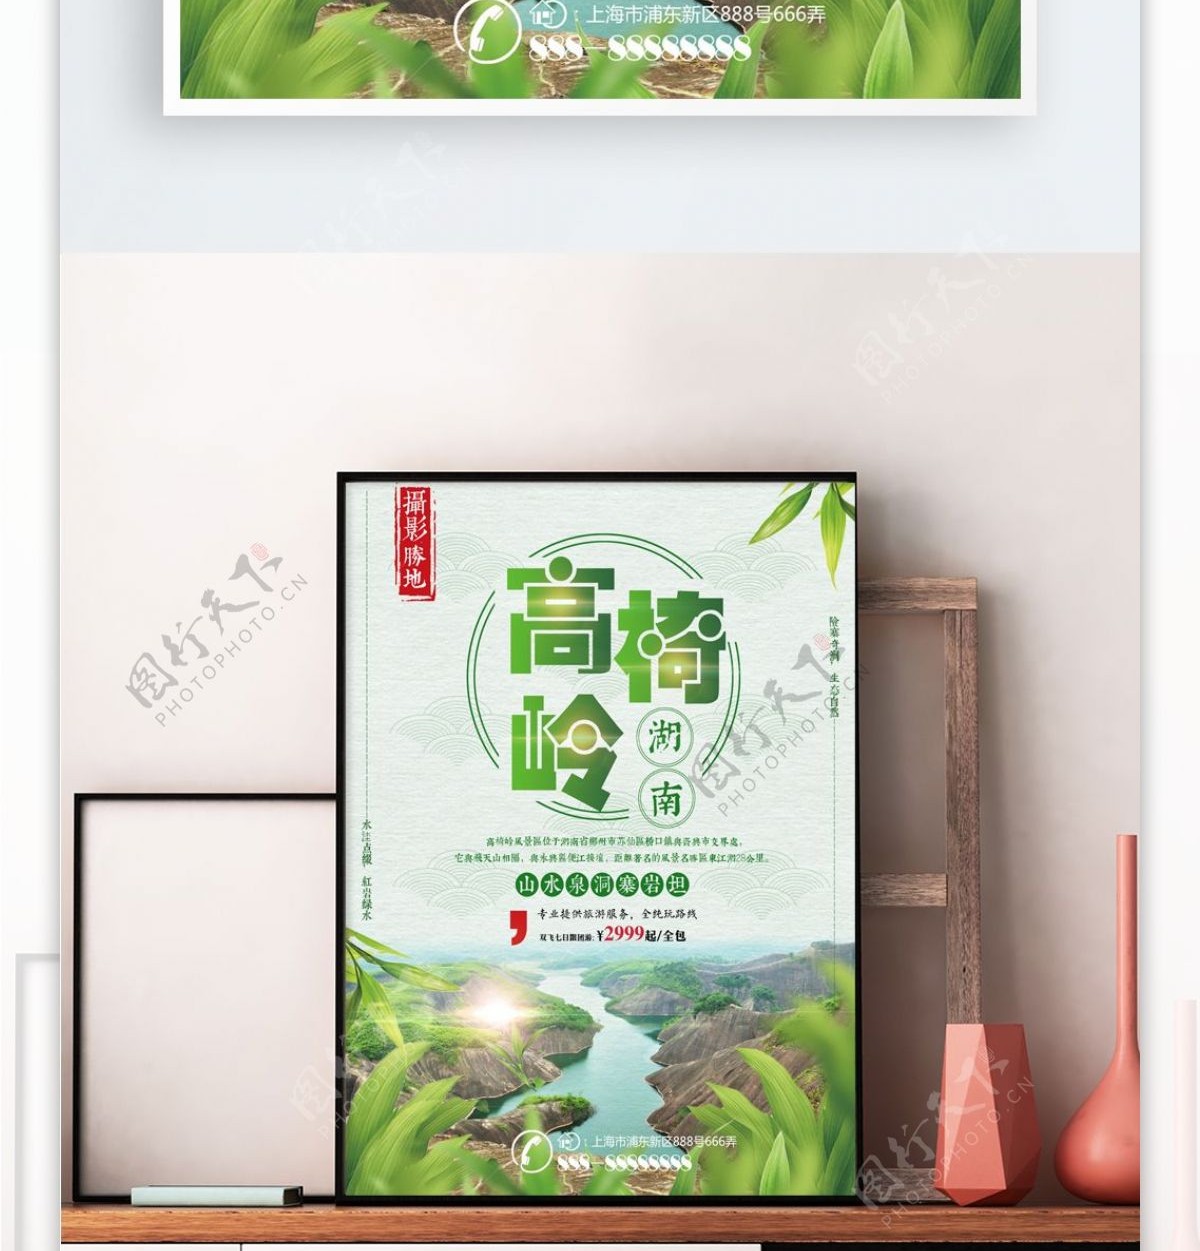 绿色简约湖南旅游高椅岭旅行社旅游促销海报